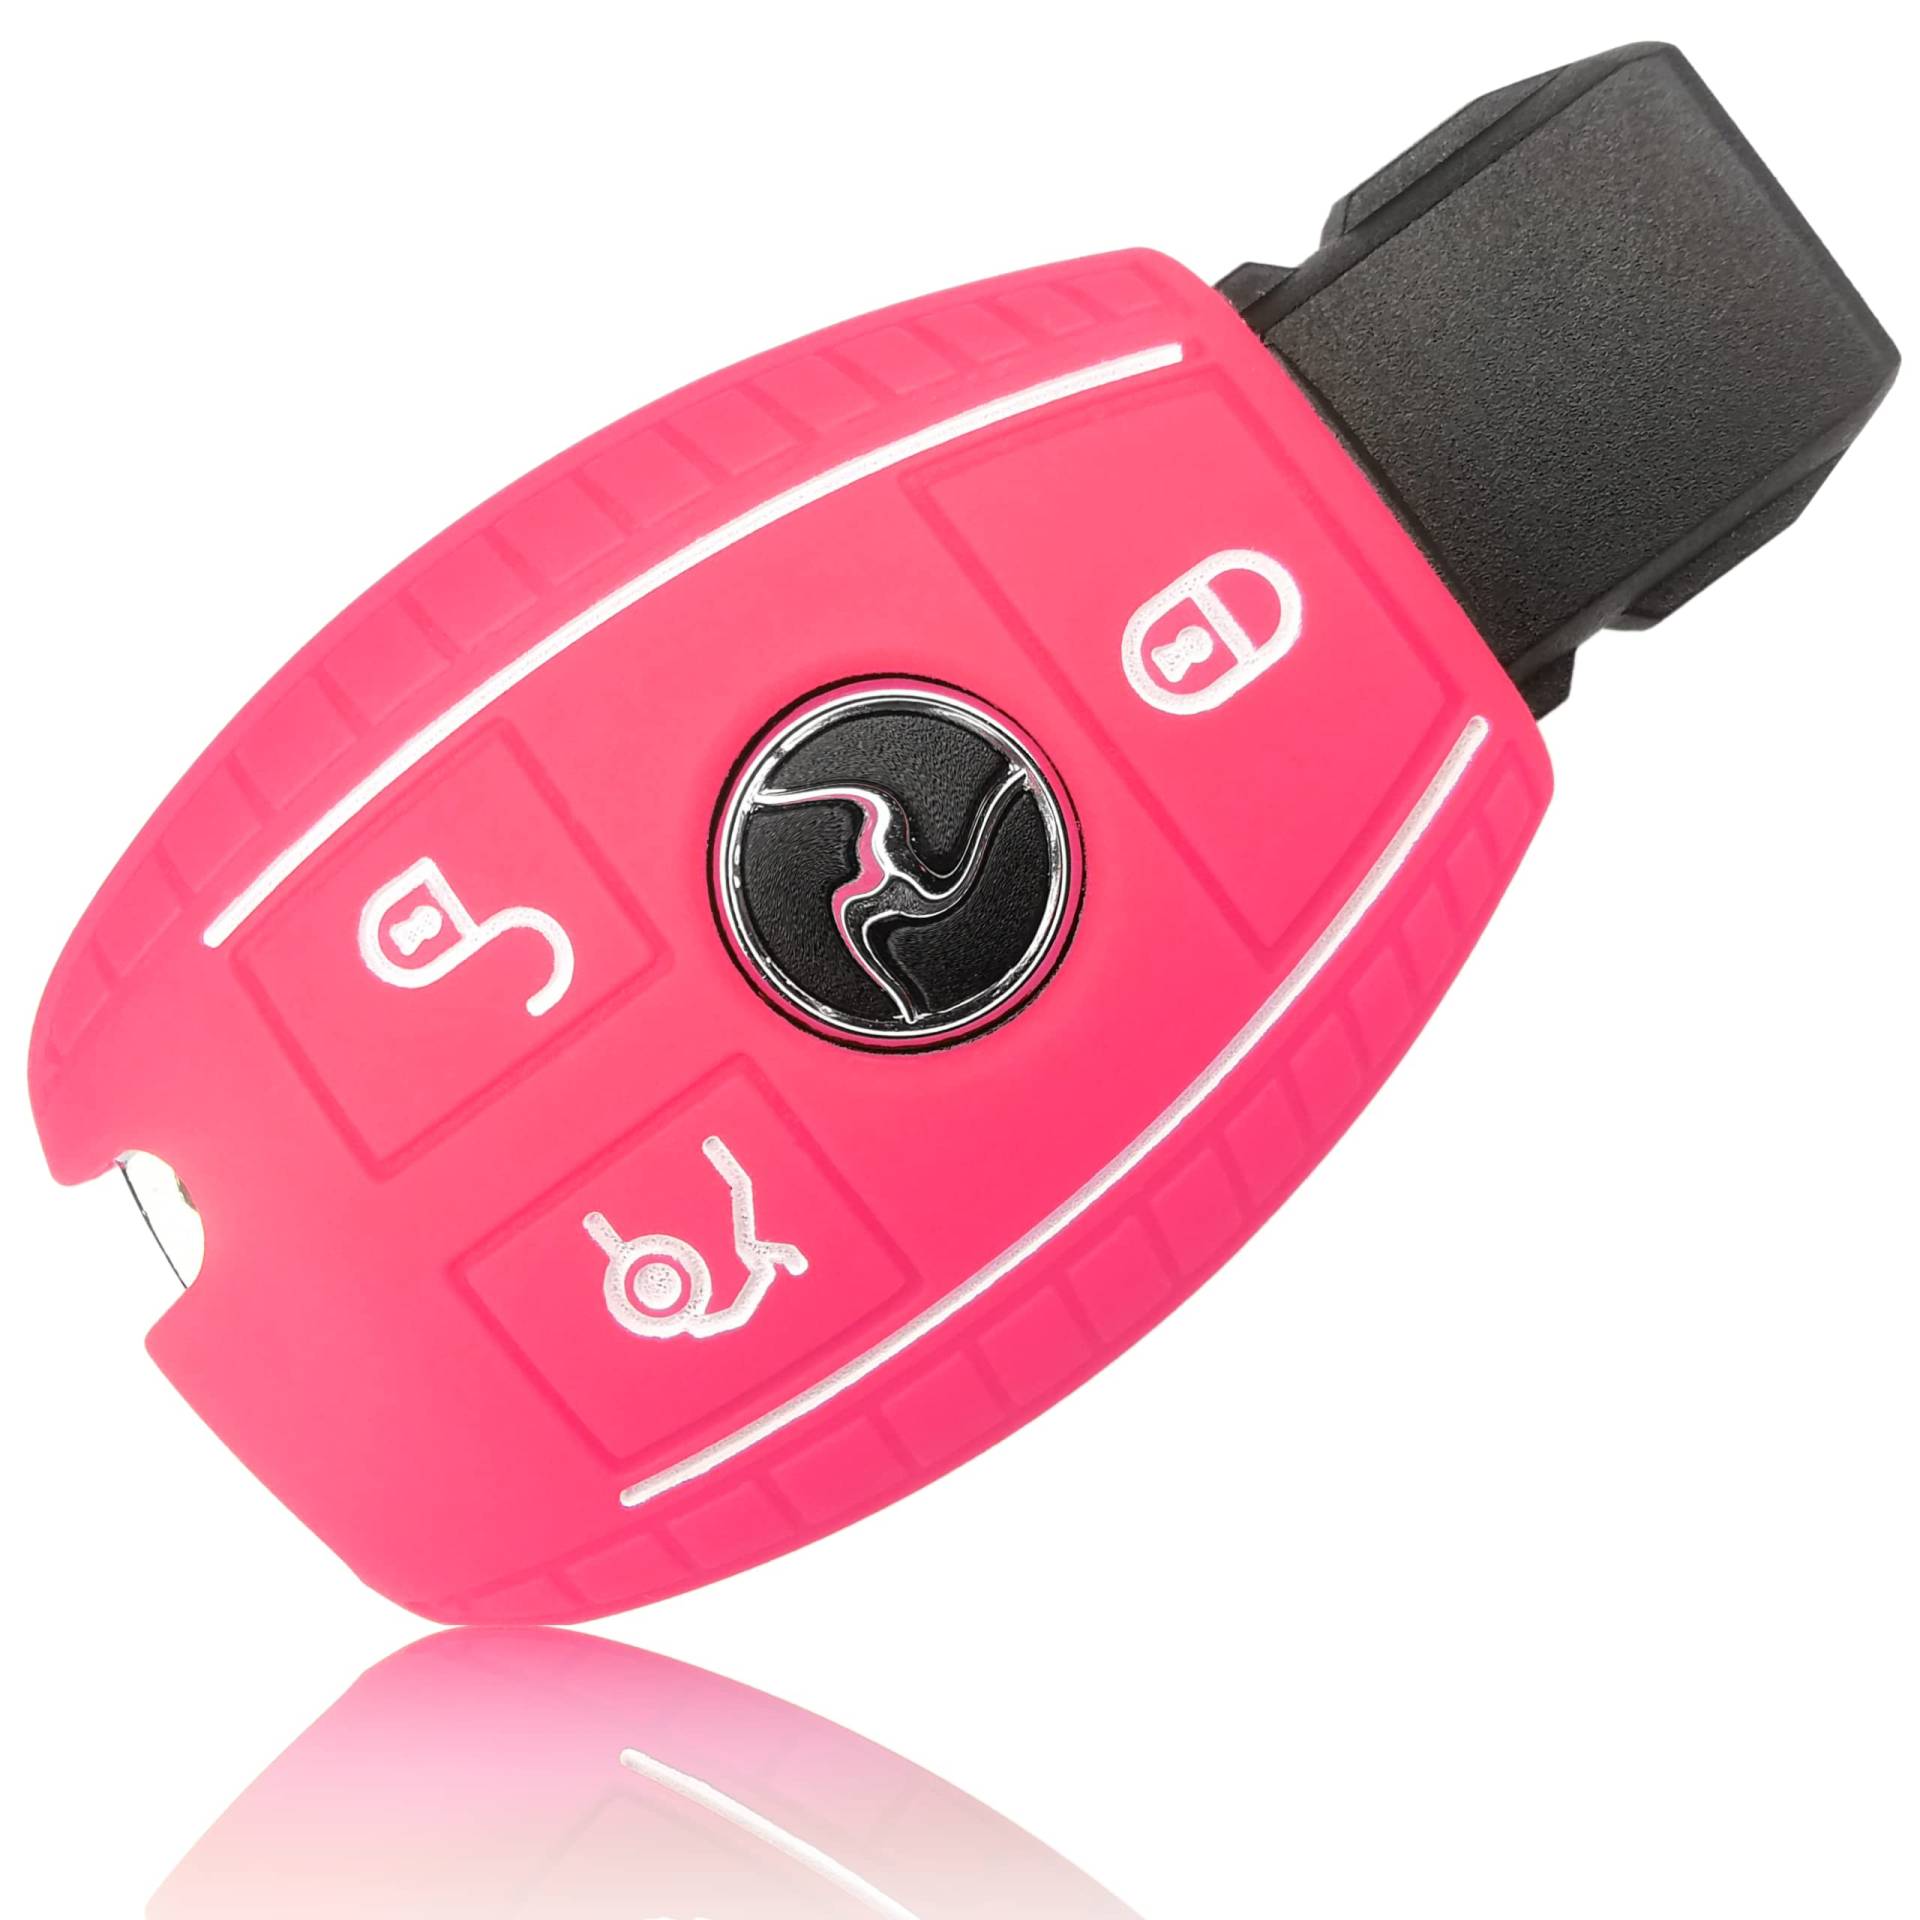 FOAMO Autoschlüssel Hülle kompatibel mit Mercedes Benz 3-Tasten - Silikon Schutzhülle Cover Schlüssel-Hülle in Rosa Pink Weiß von FOAMO